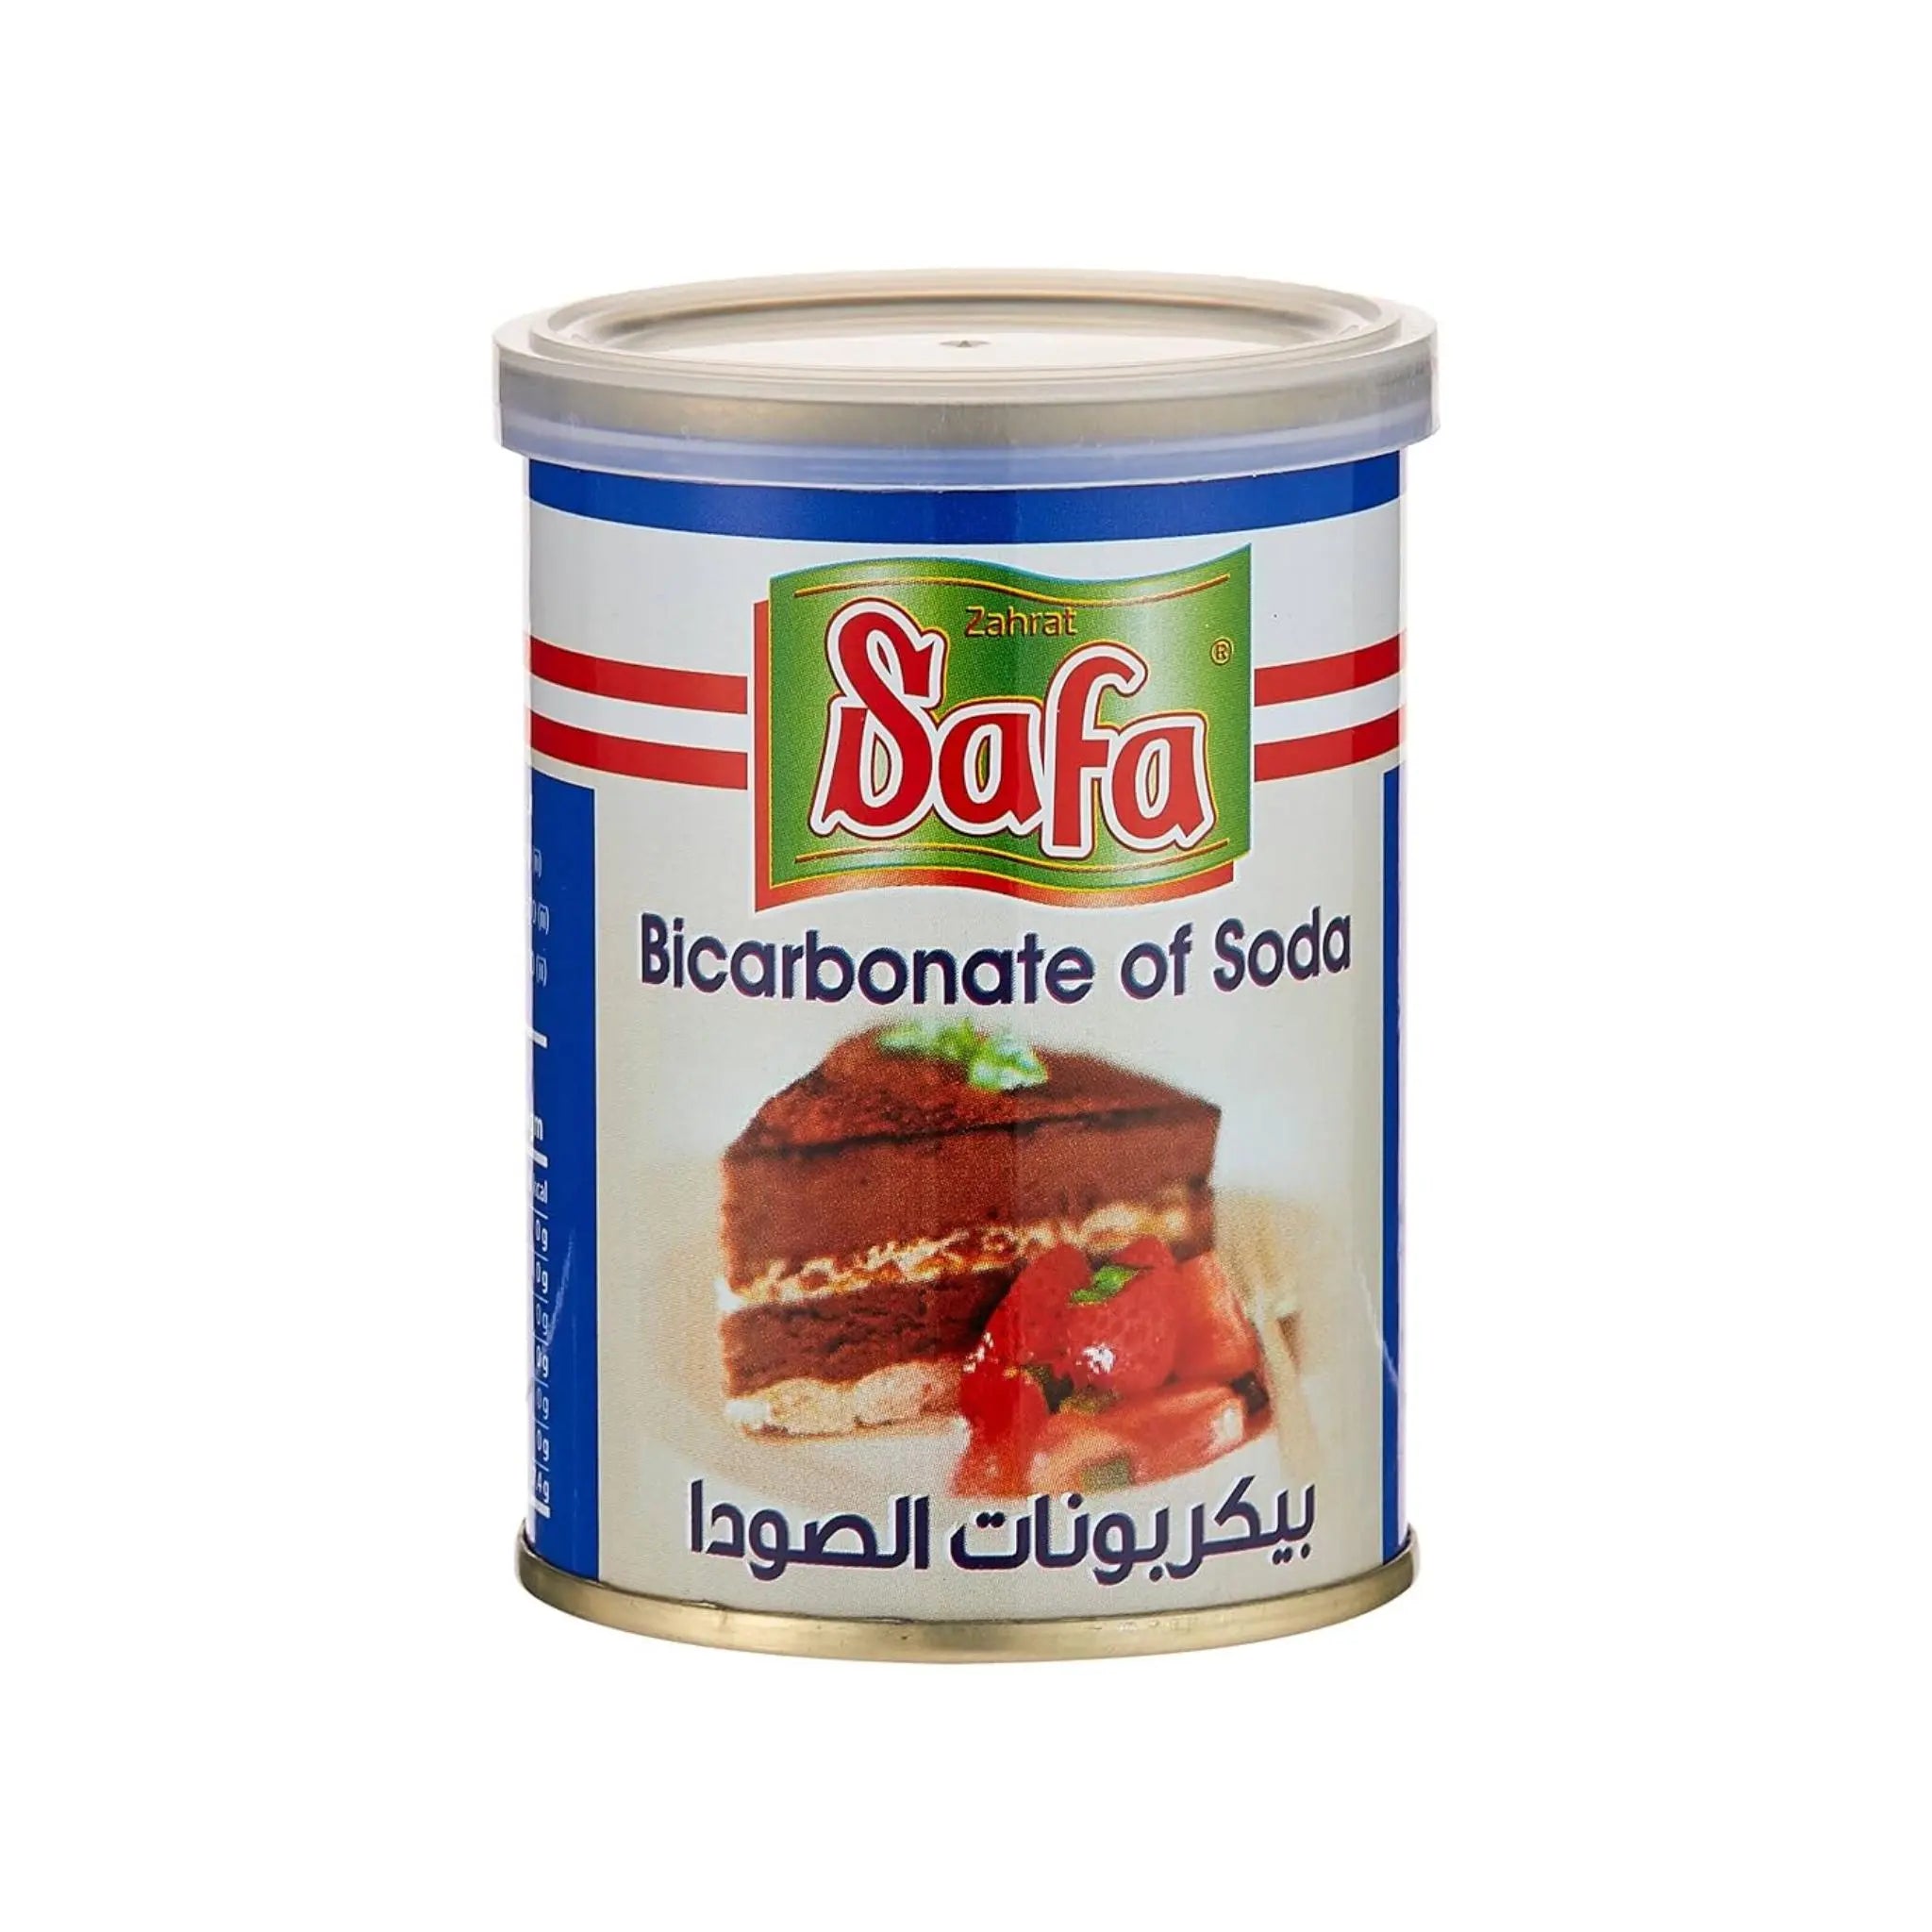 Zahrat Safa Bicarbonate of Soda - 4X12X113G (1 carton) - Marino.AE